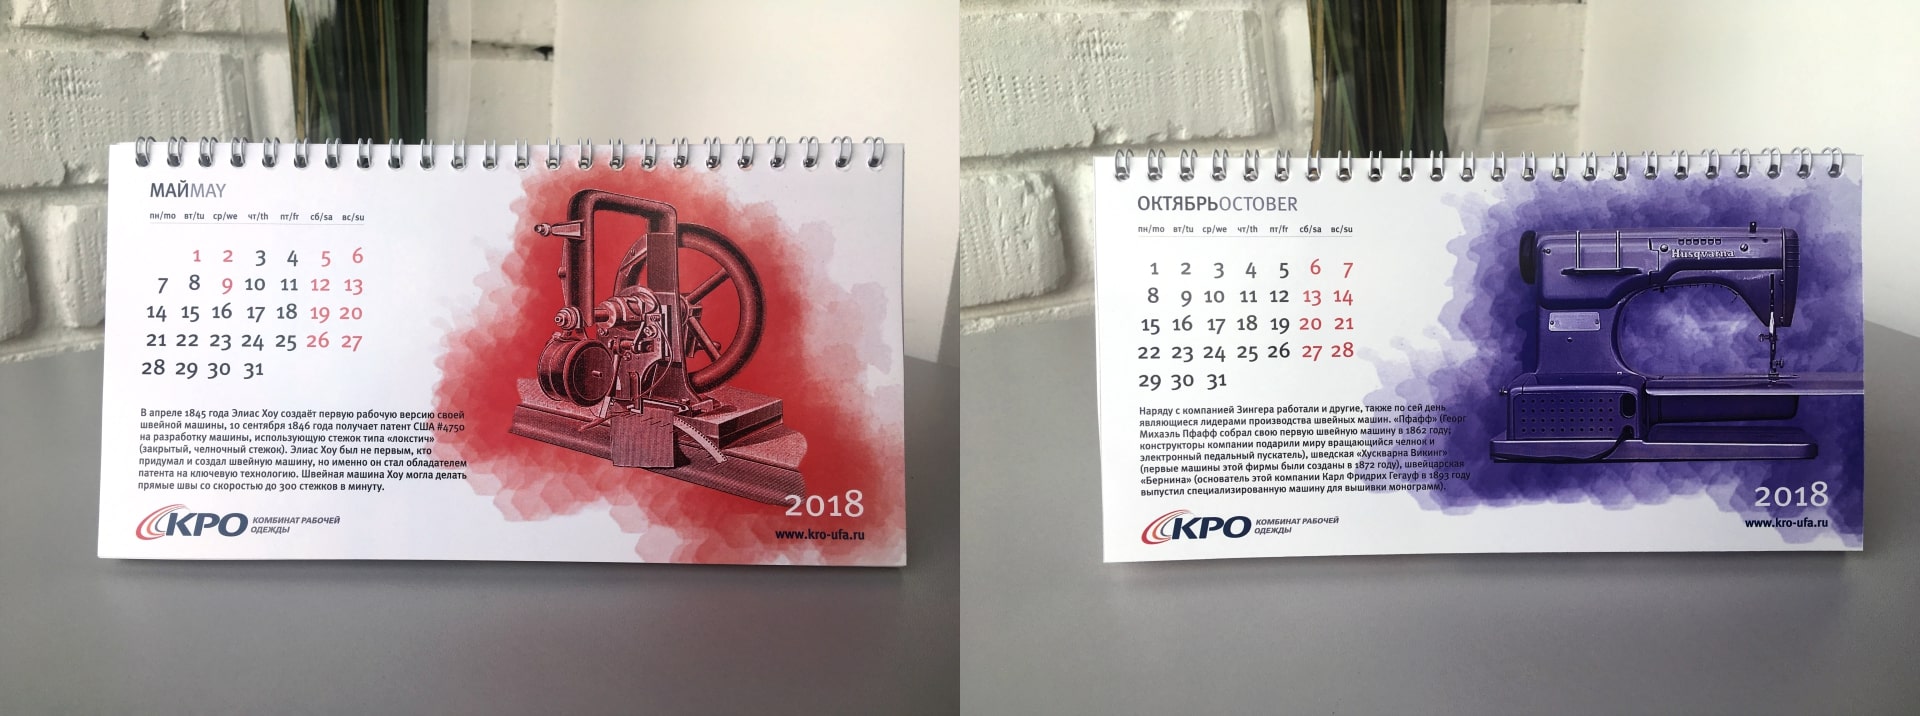 calendars_kro_4-min.jpg